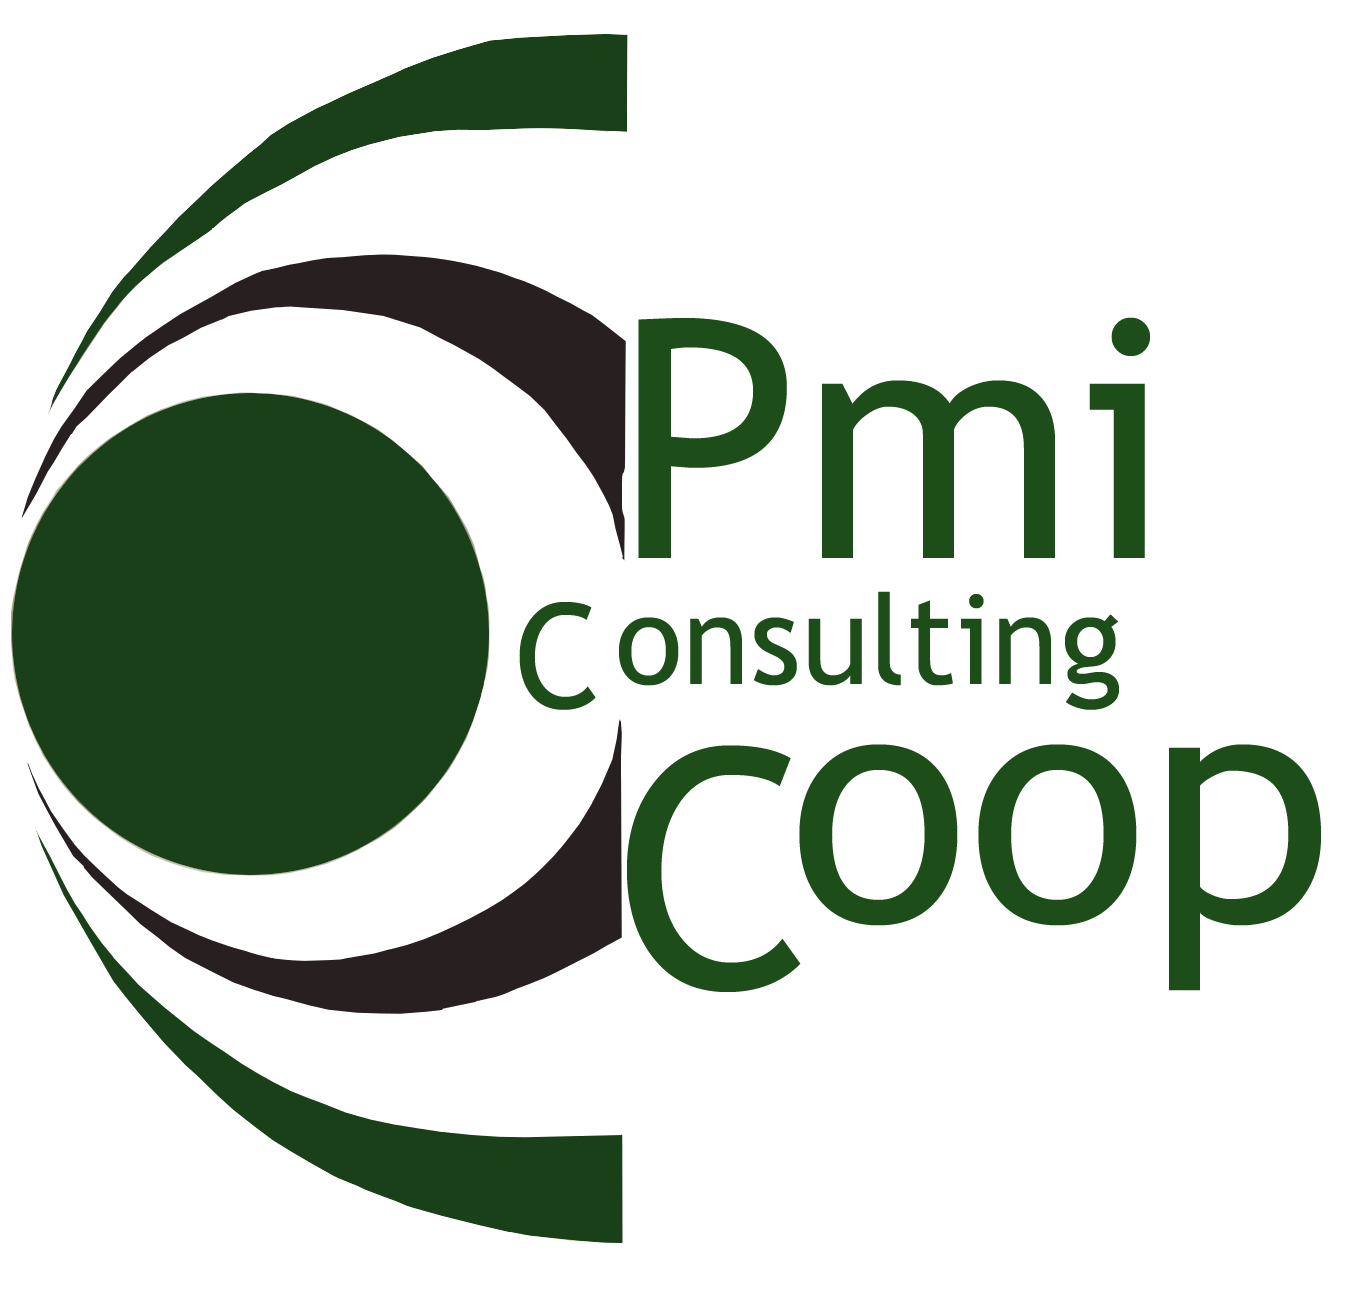 PMI Consulting Coop